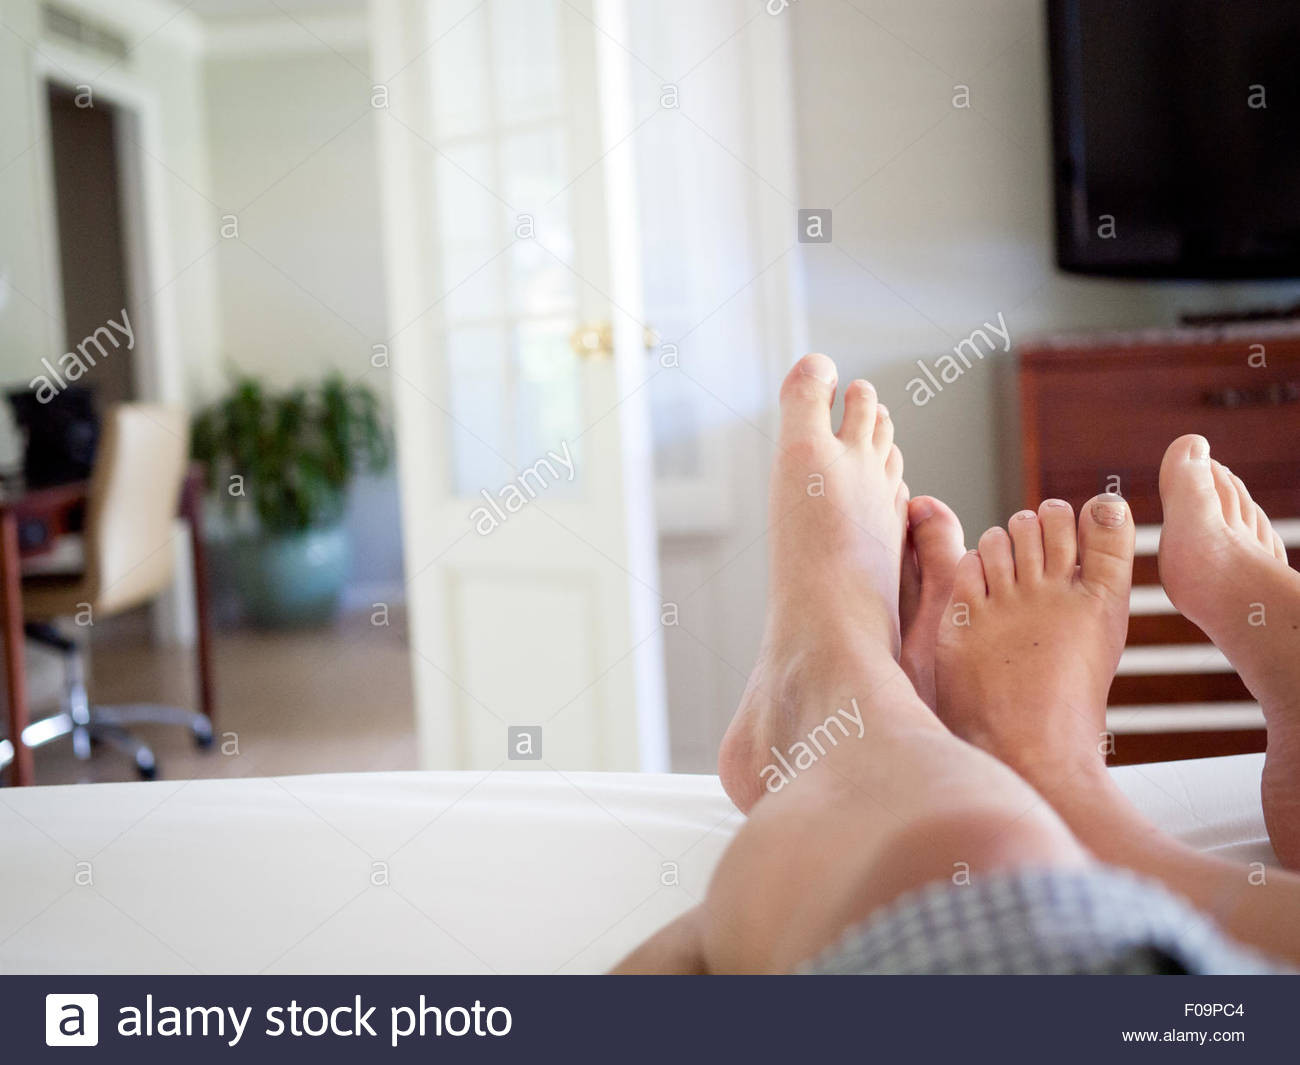 Mann Und Frau Im Bett
 Die Füße von Mann und Frau im Bett in einem Hotel Zimmer